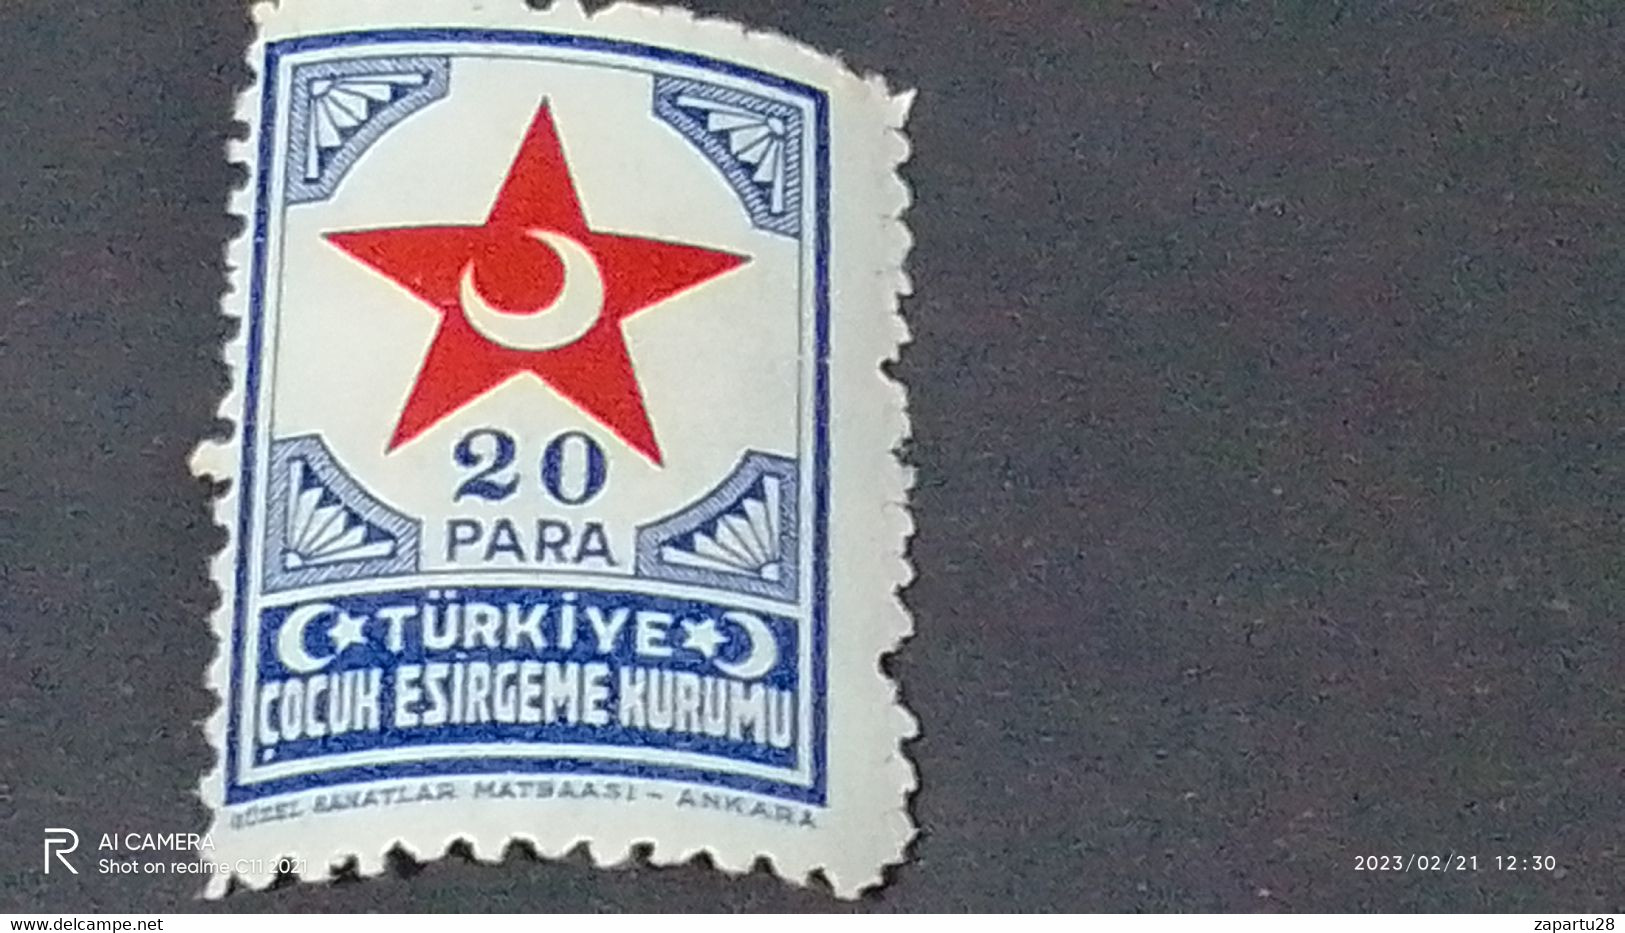 TÜRKEY--YARDIM PULLARI-1940-50  ÇOCUK ESİRGEME KURUMU  20P  DAMGASIZ - Charity Stamps